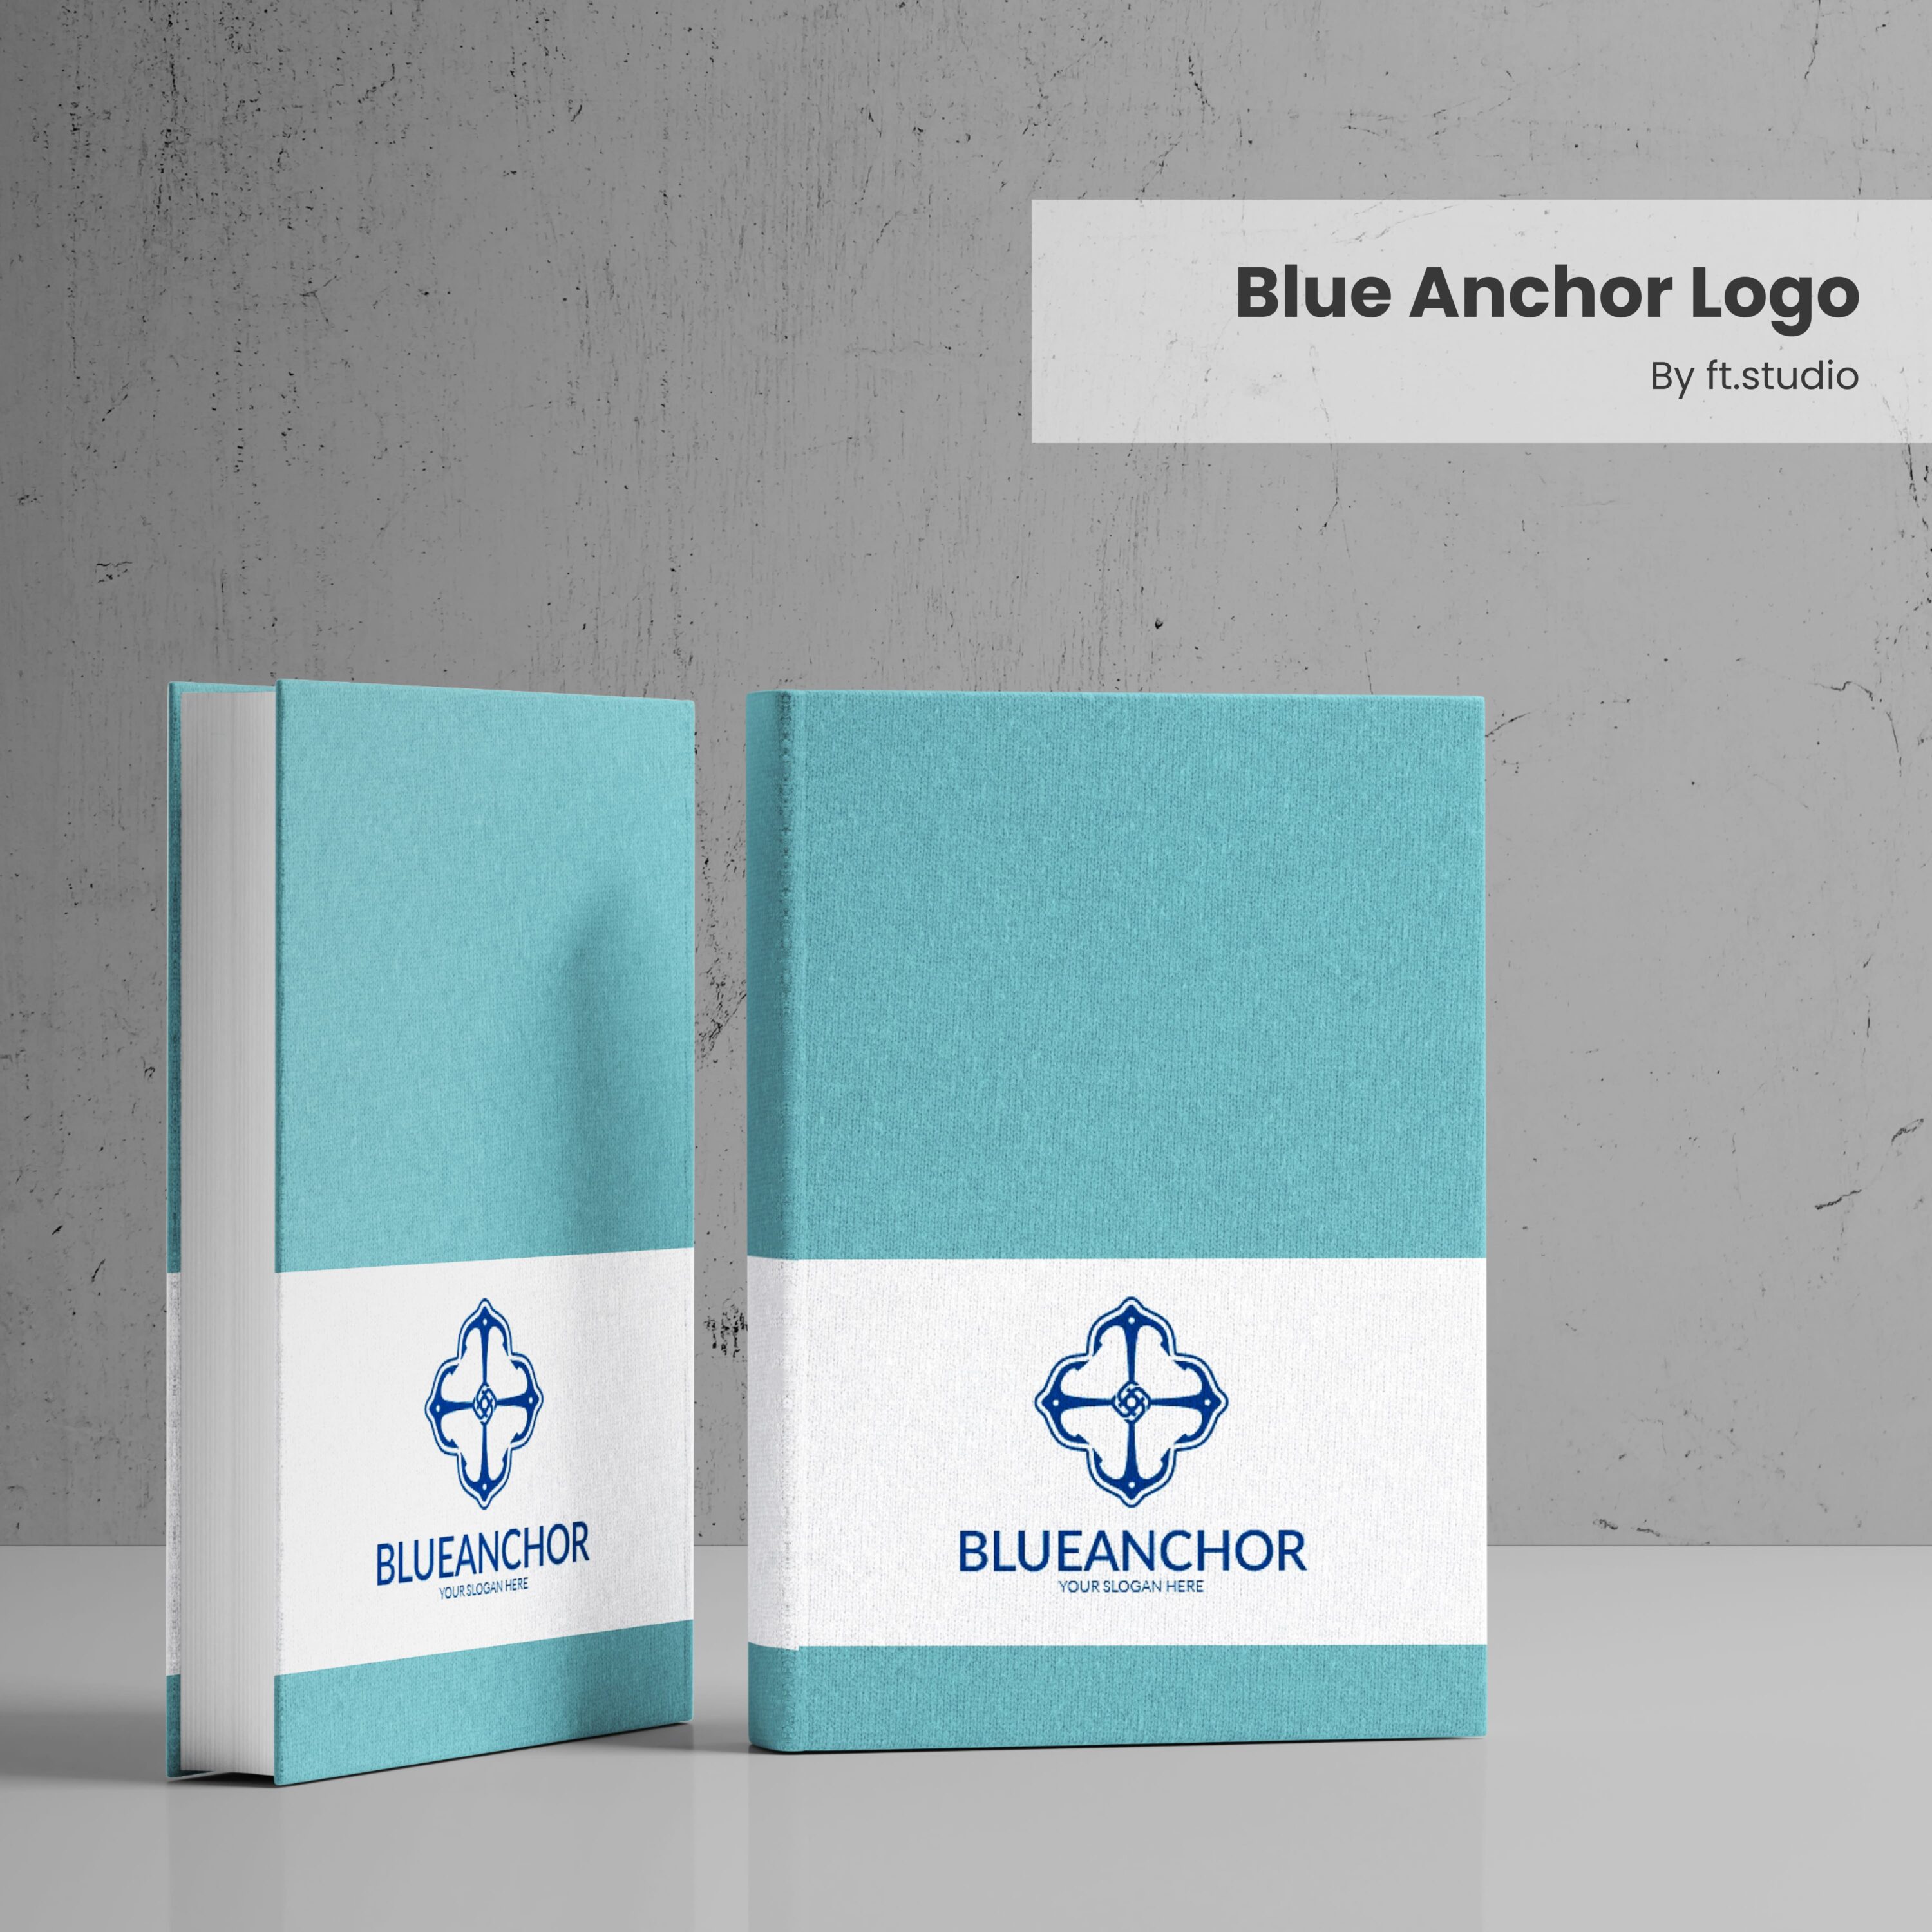 Blue Anchor Logo cover.